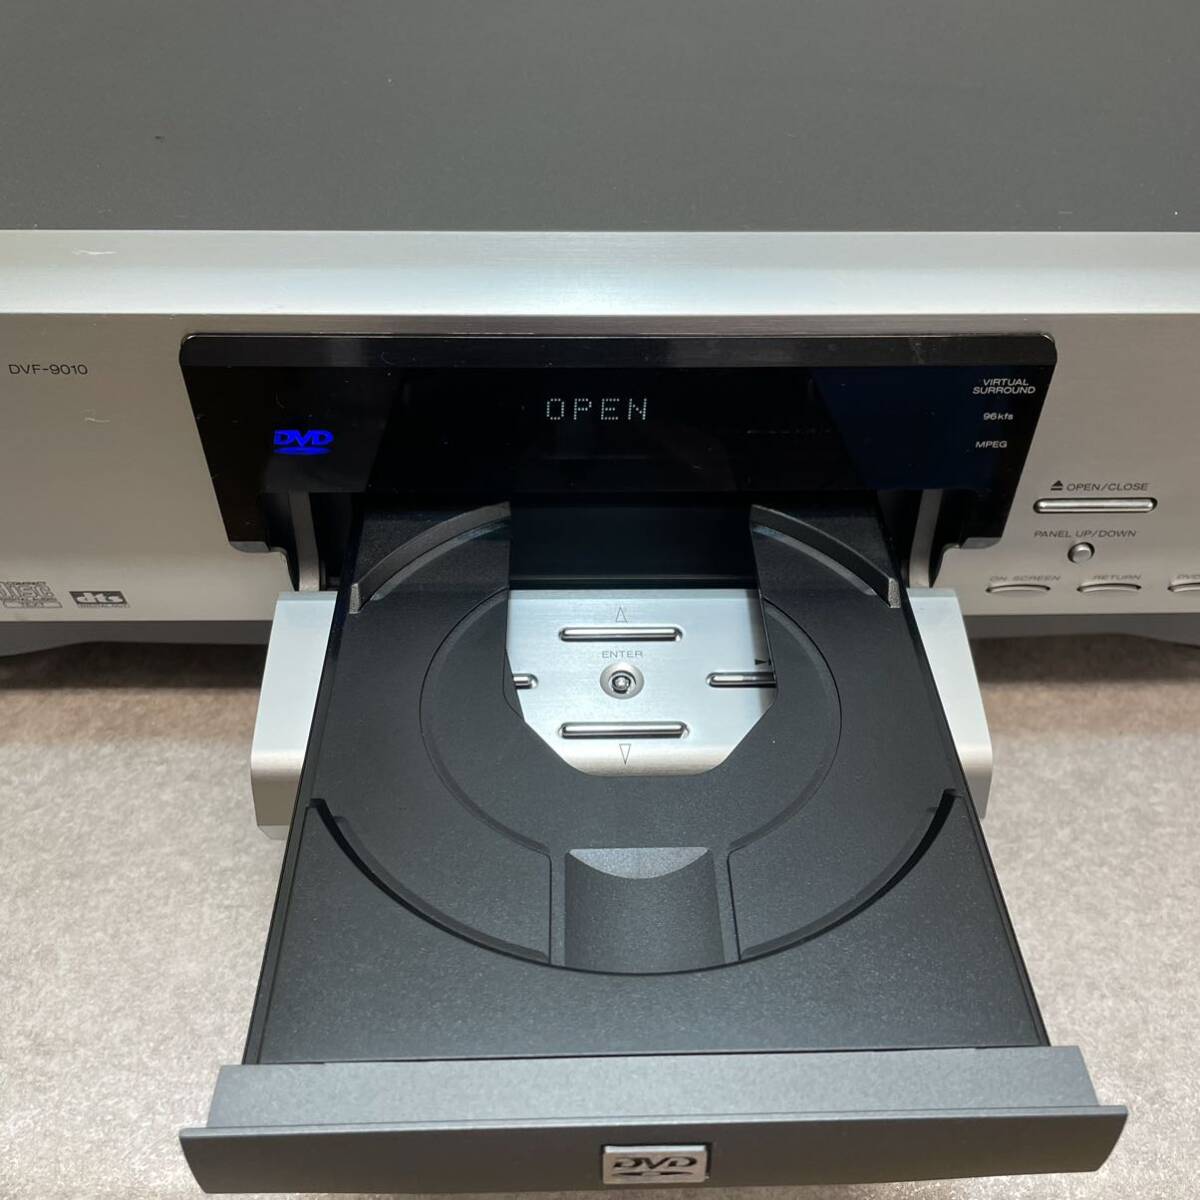 a5006*KENWOOD DVF-9010 DVD VCD CD PLAYER origin box attaching 